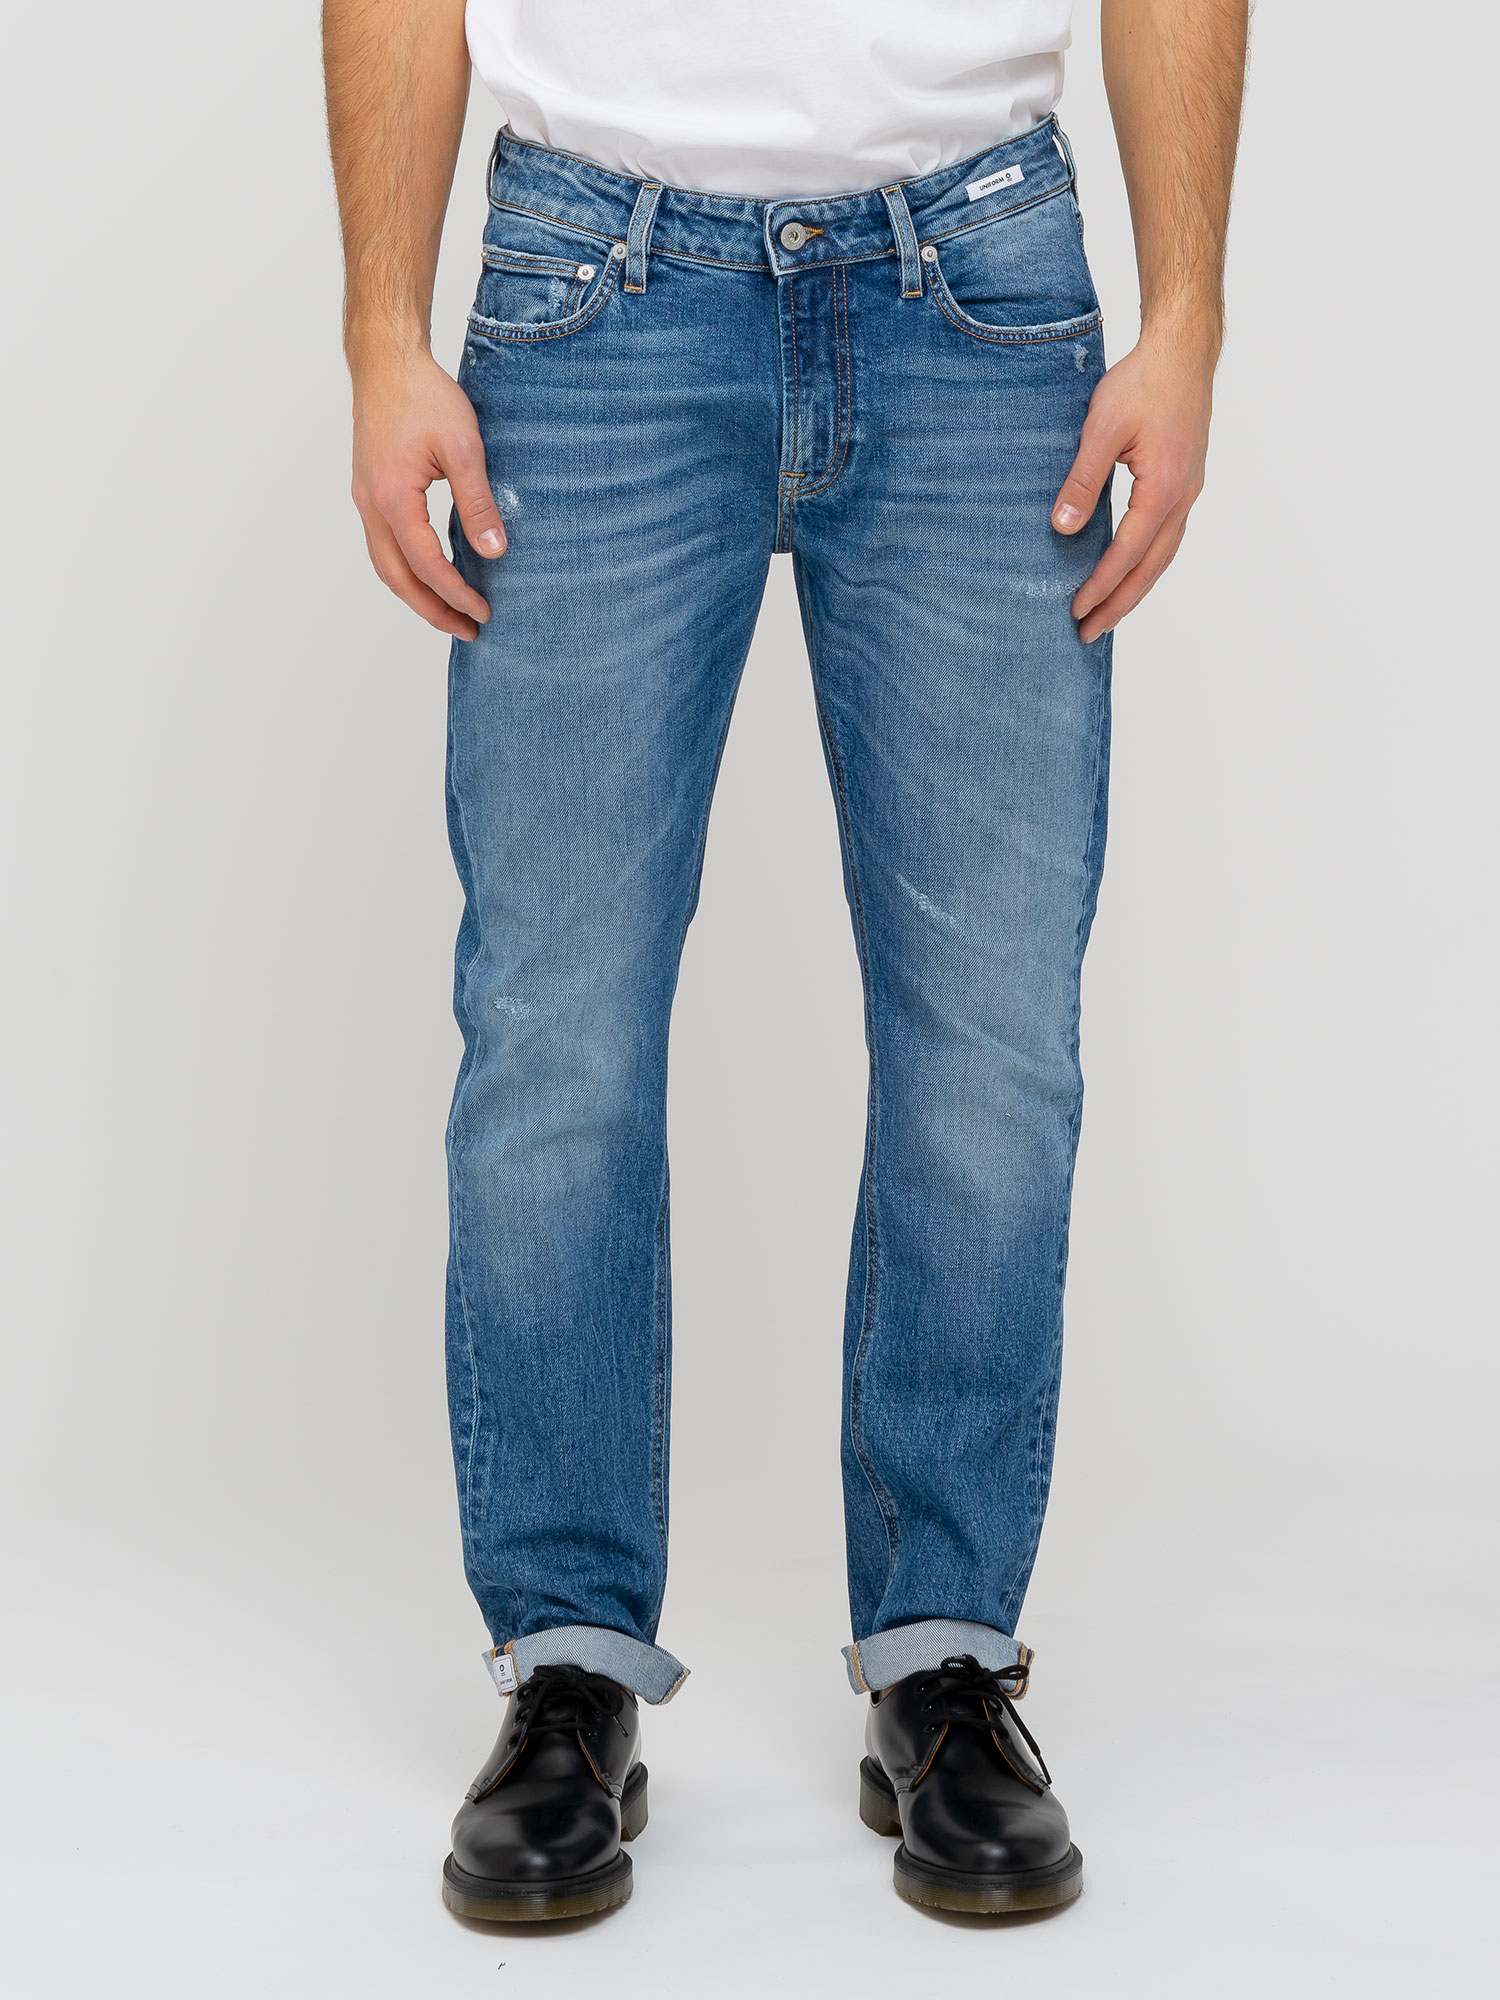 IBANEZ SLIM FIT S3 - Uniform Jeans Official